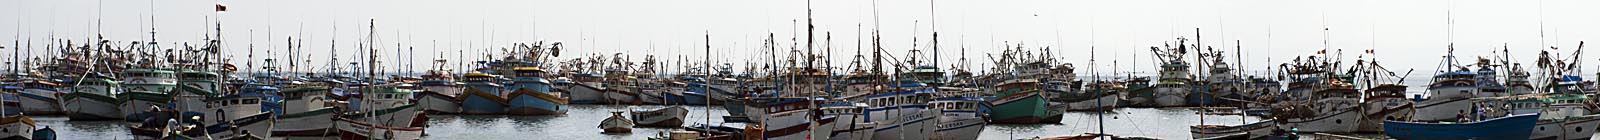 Paita Fishin boats - Banner